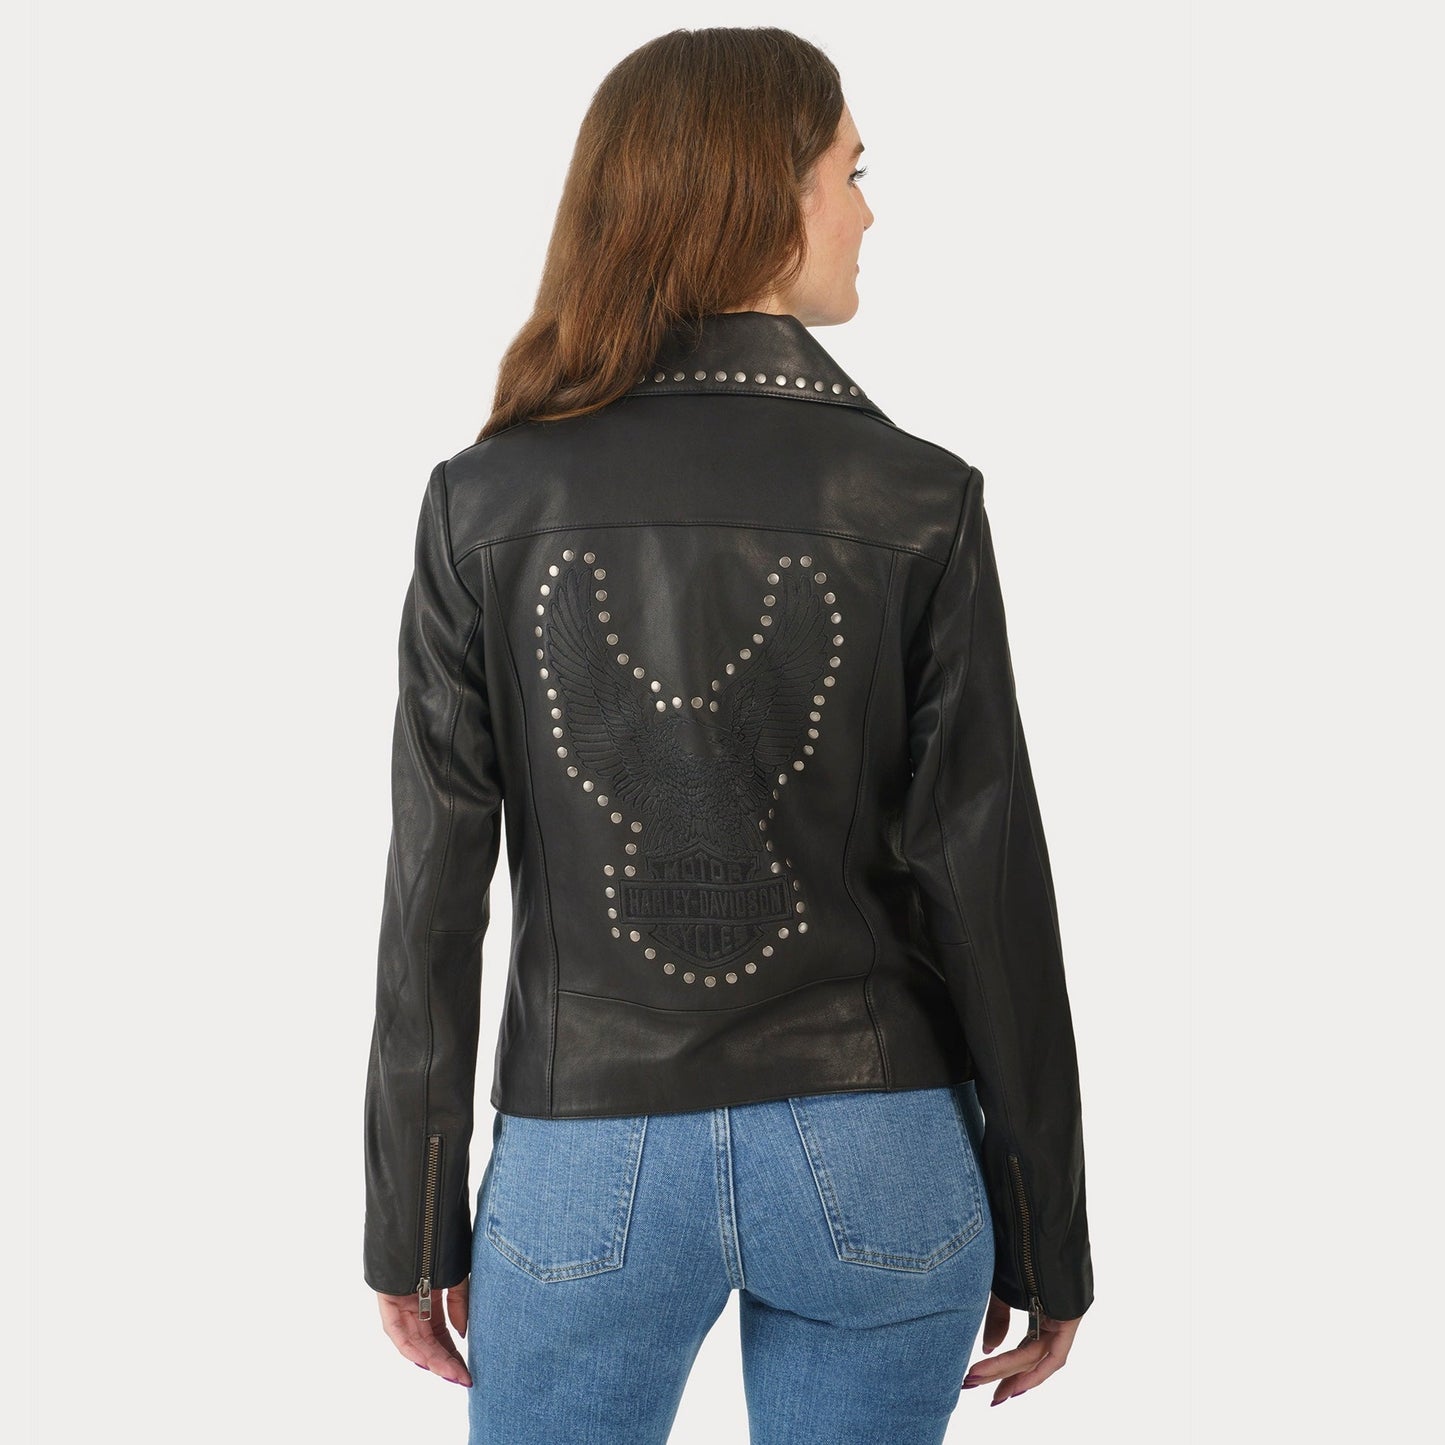 Harley-Davidson Women's Classic Eagle Studded Leather Jacket (lifestyle 2)